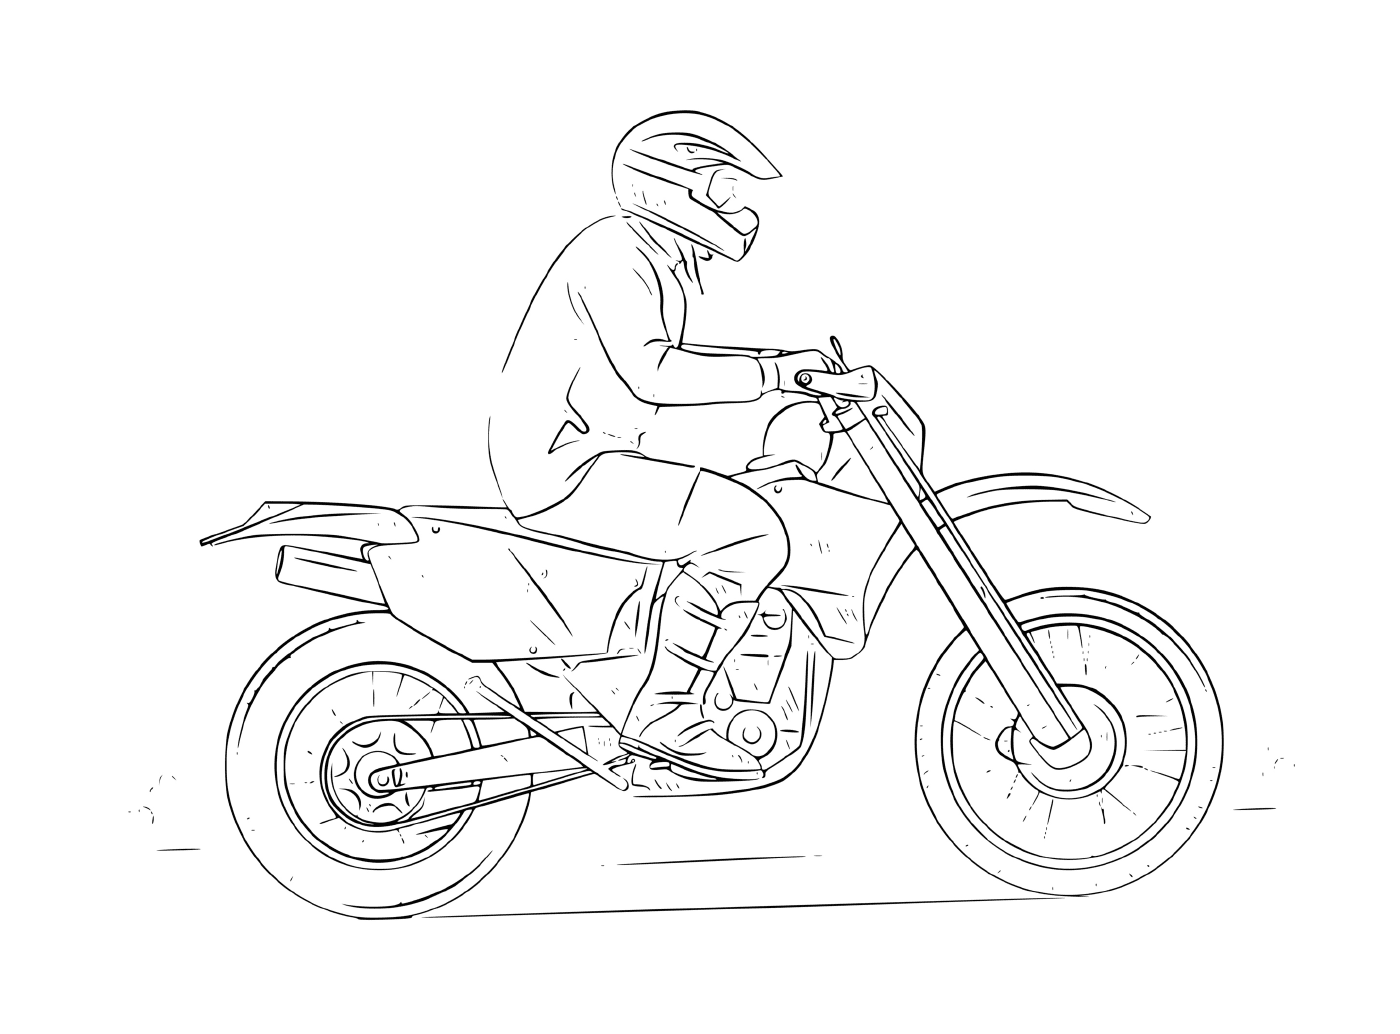   homme conduisant moto cross 